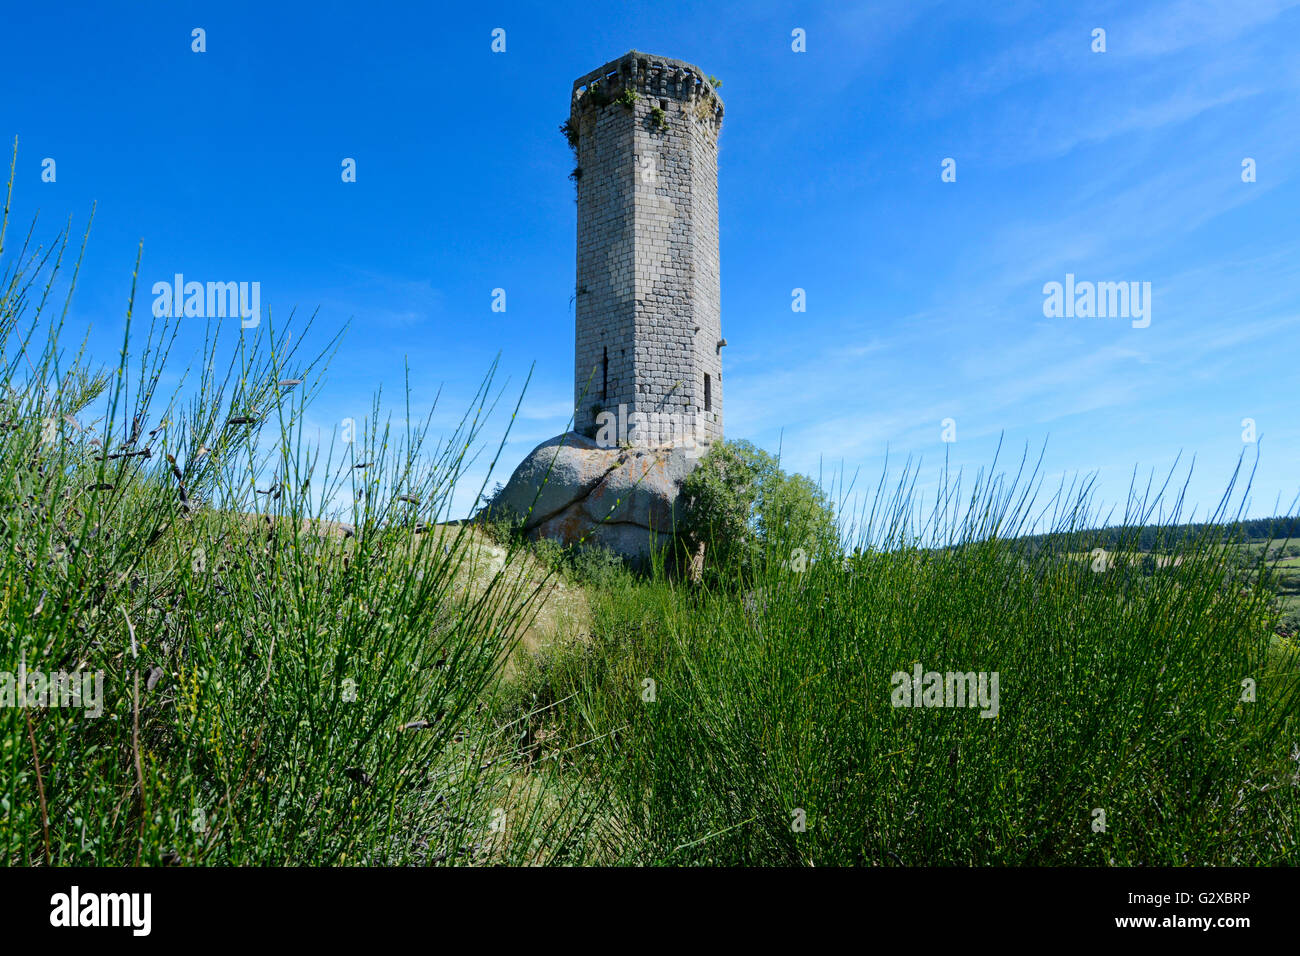 Tour de la Clauze tower, Saugues, Haute-Loire department, Auvergne, France Stock Photo